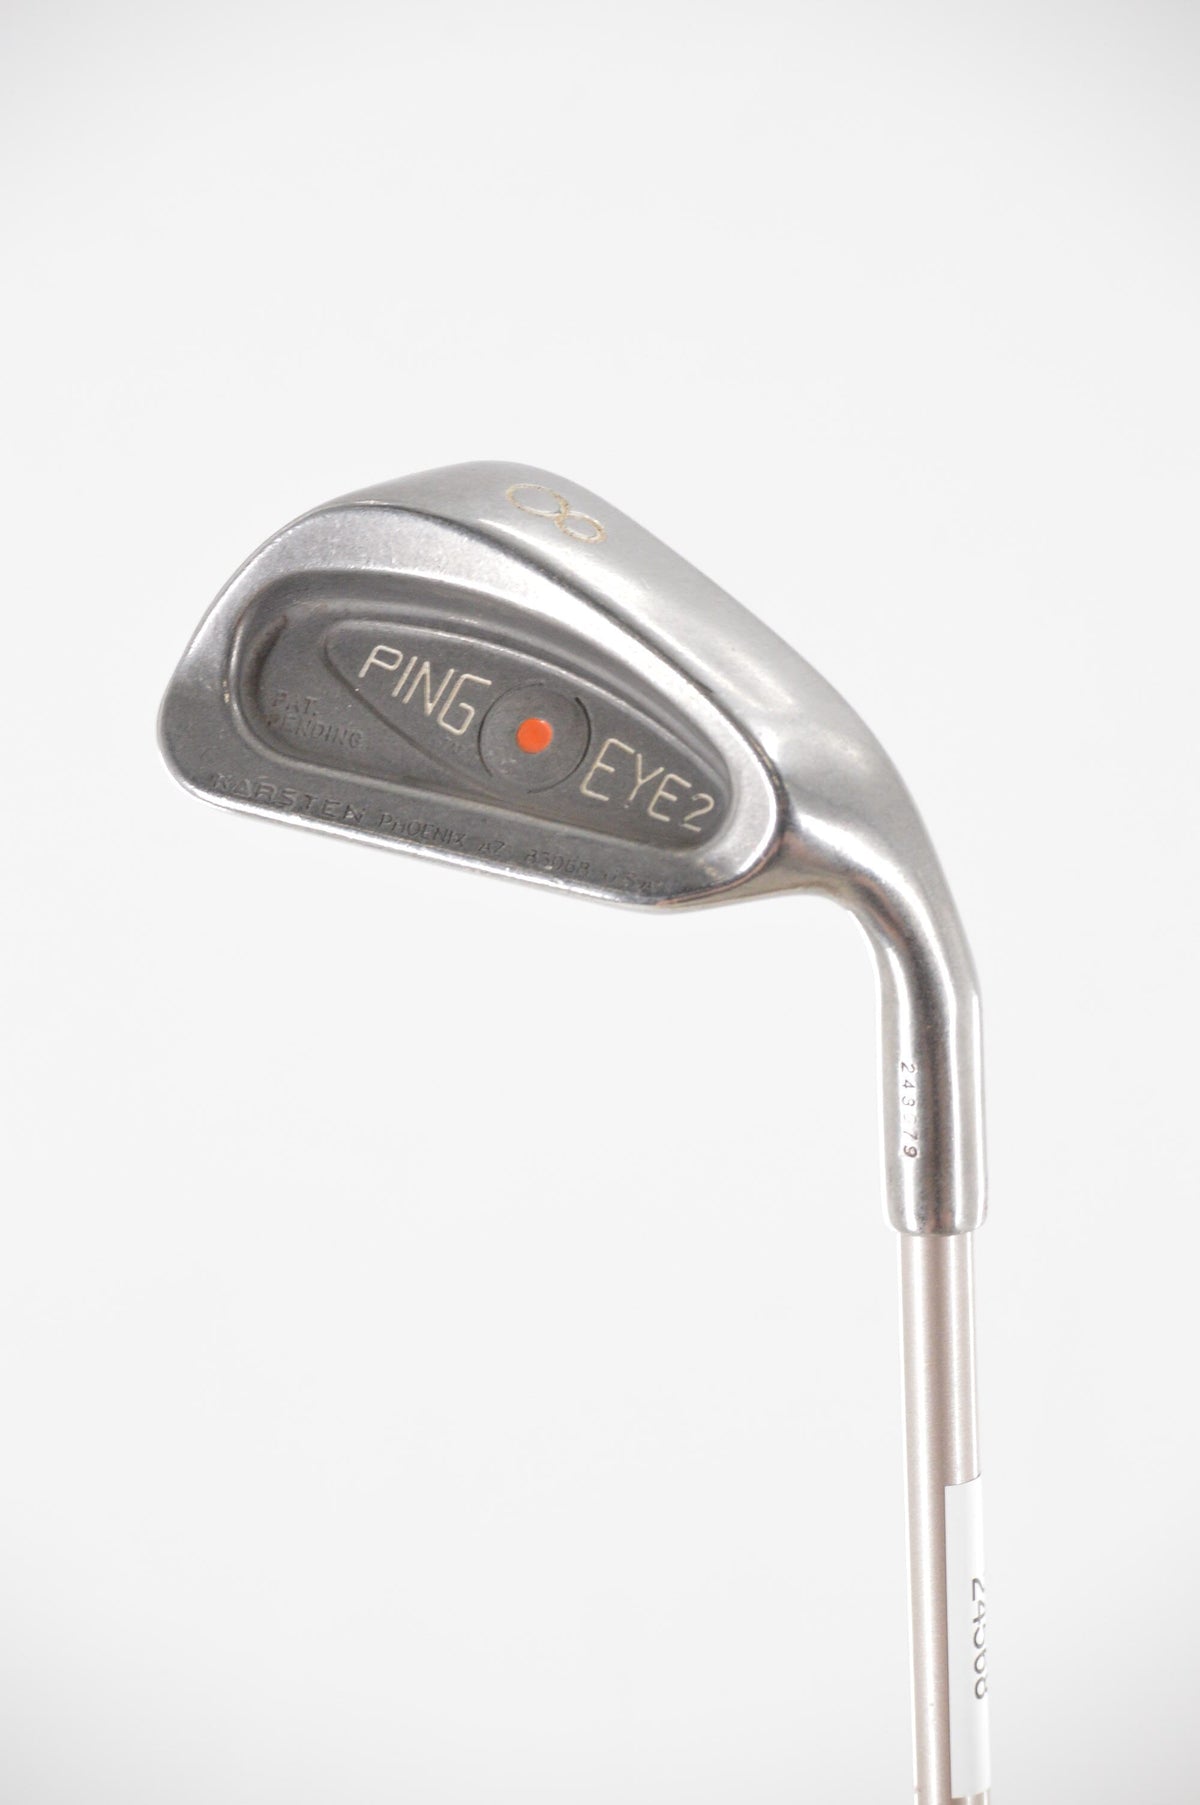 Ping Eye 2 8 Iron SR Flex 35.75" Golf Clubs GolfRoots 